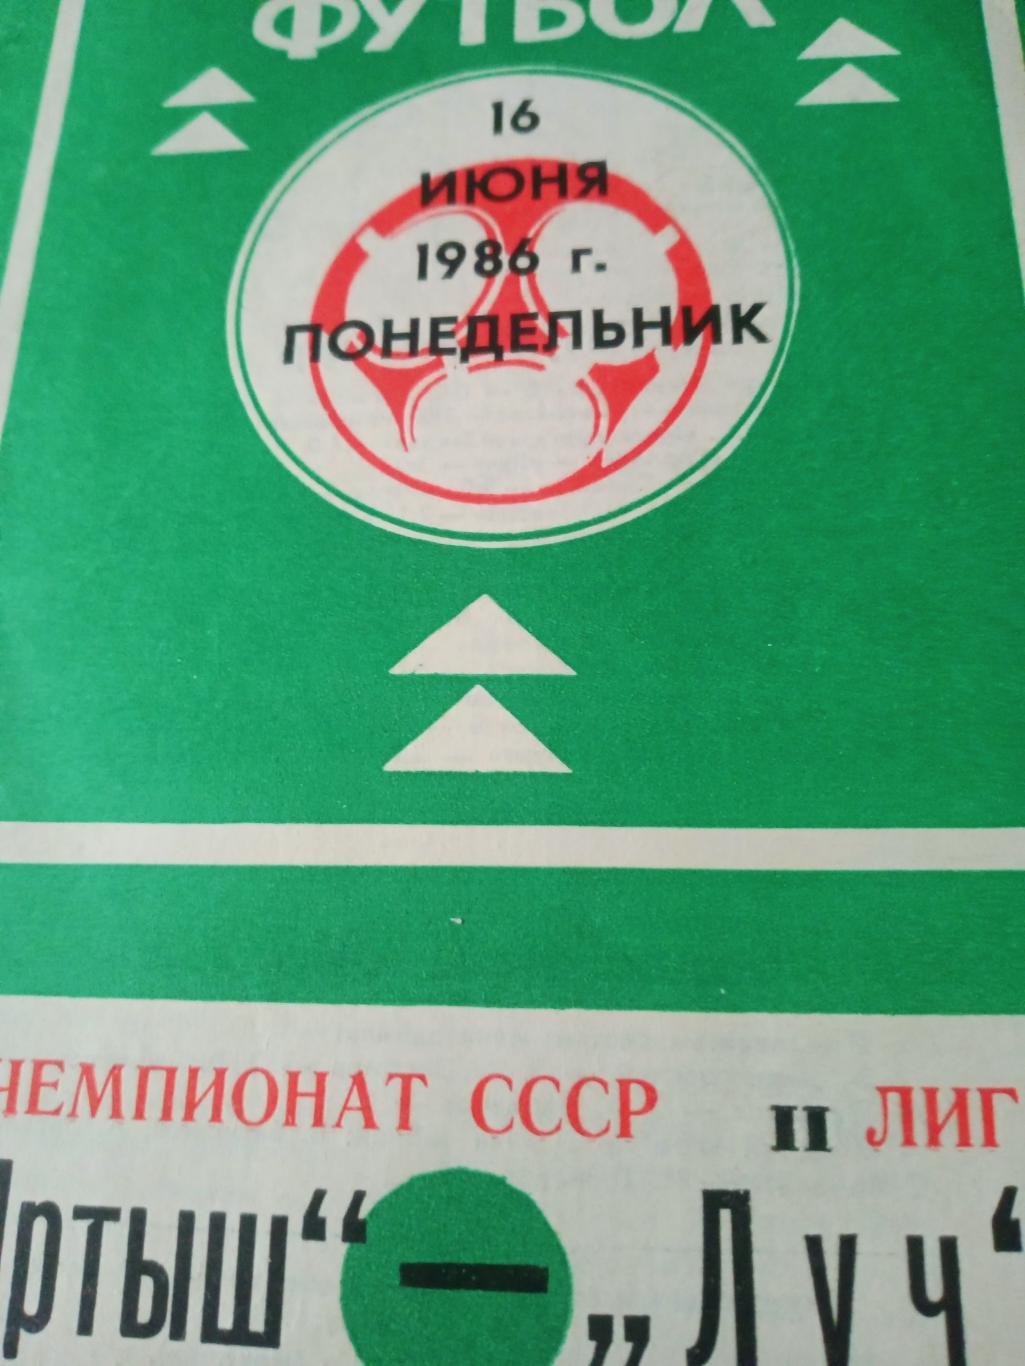 Иртыш Омск - Луч Владивосток. 16 июня 1986 год